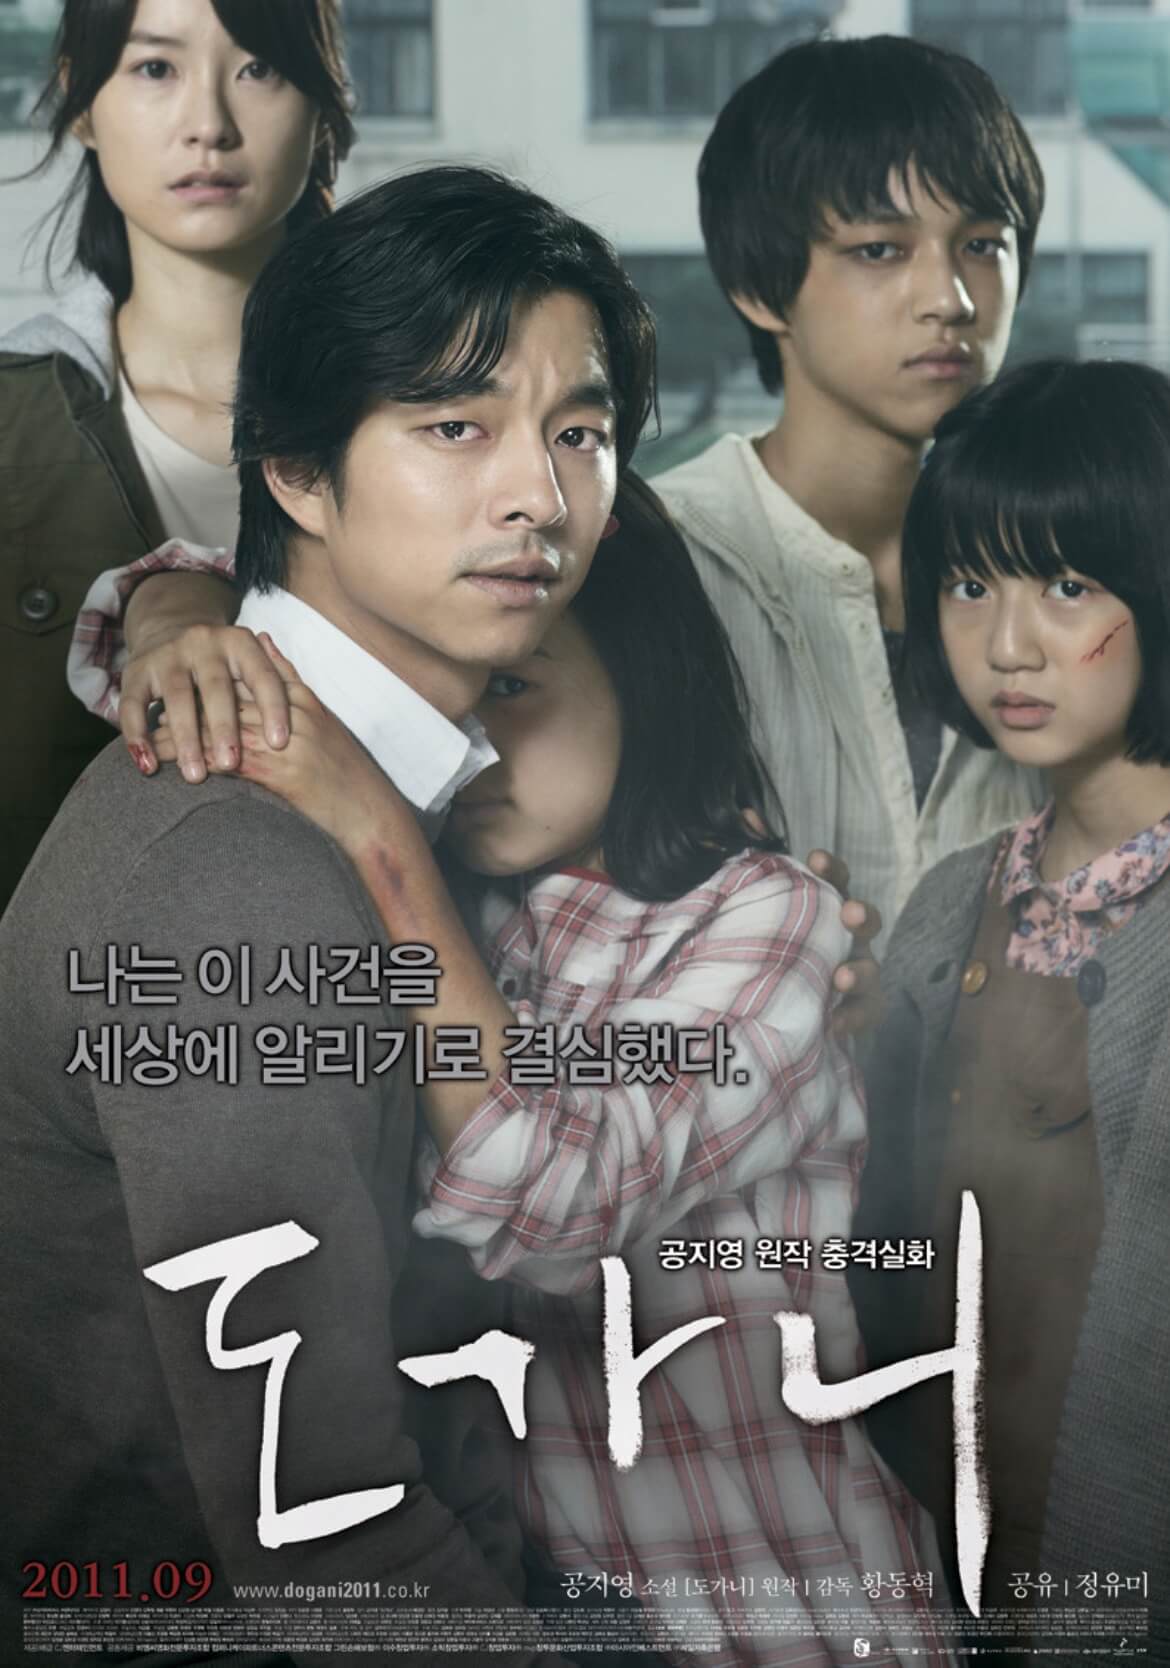 한국 실화 범죄 드라마 '도가니'